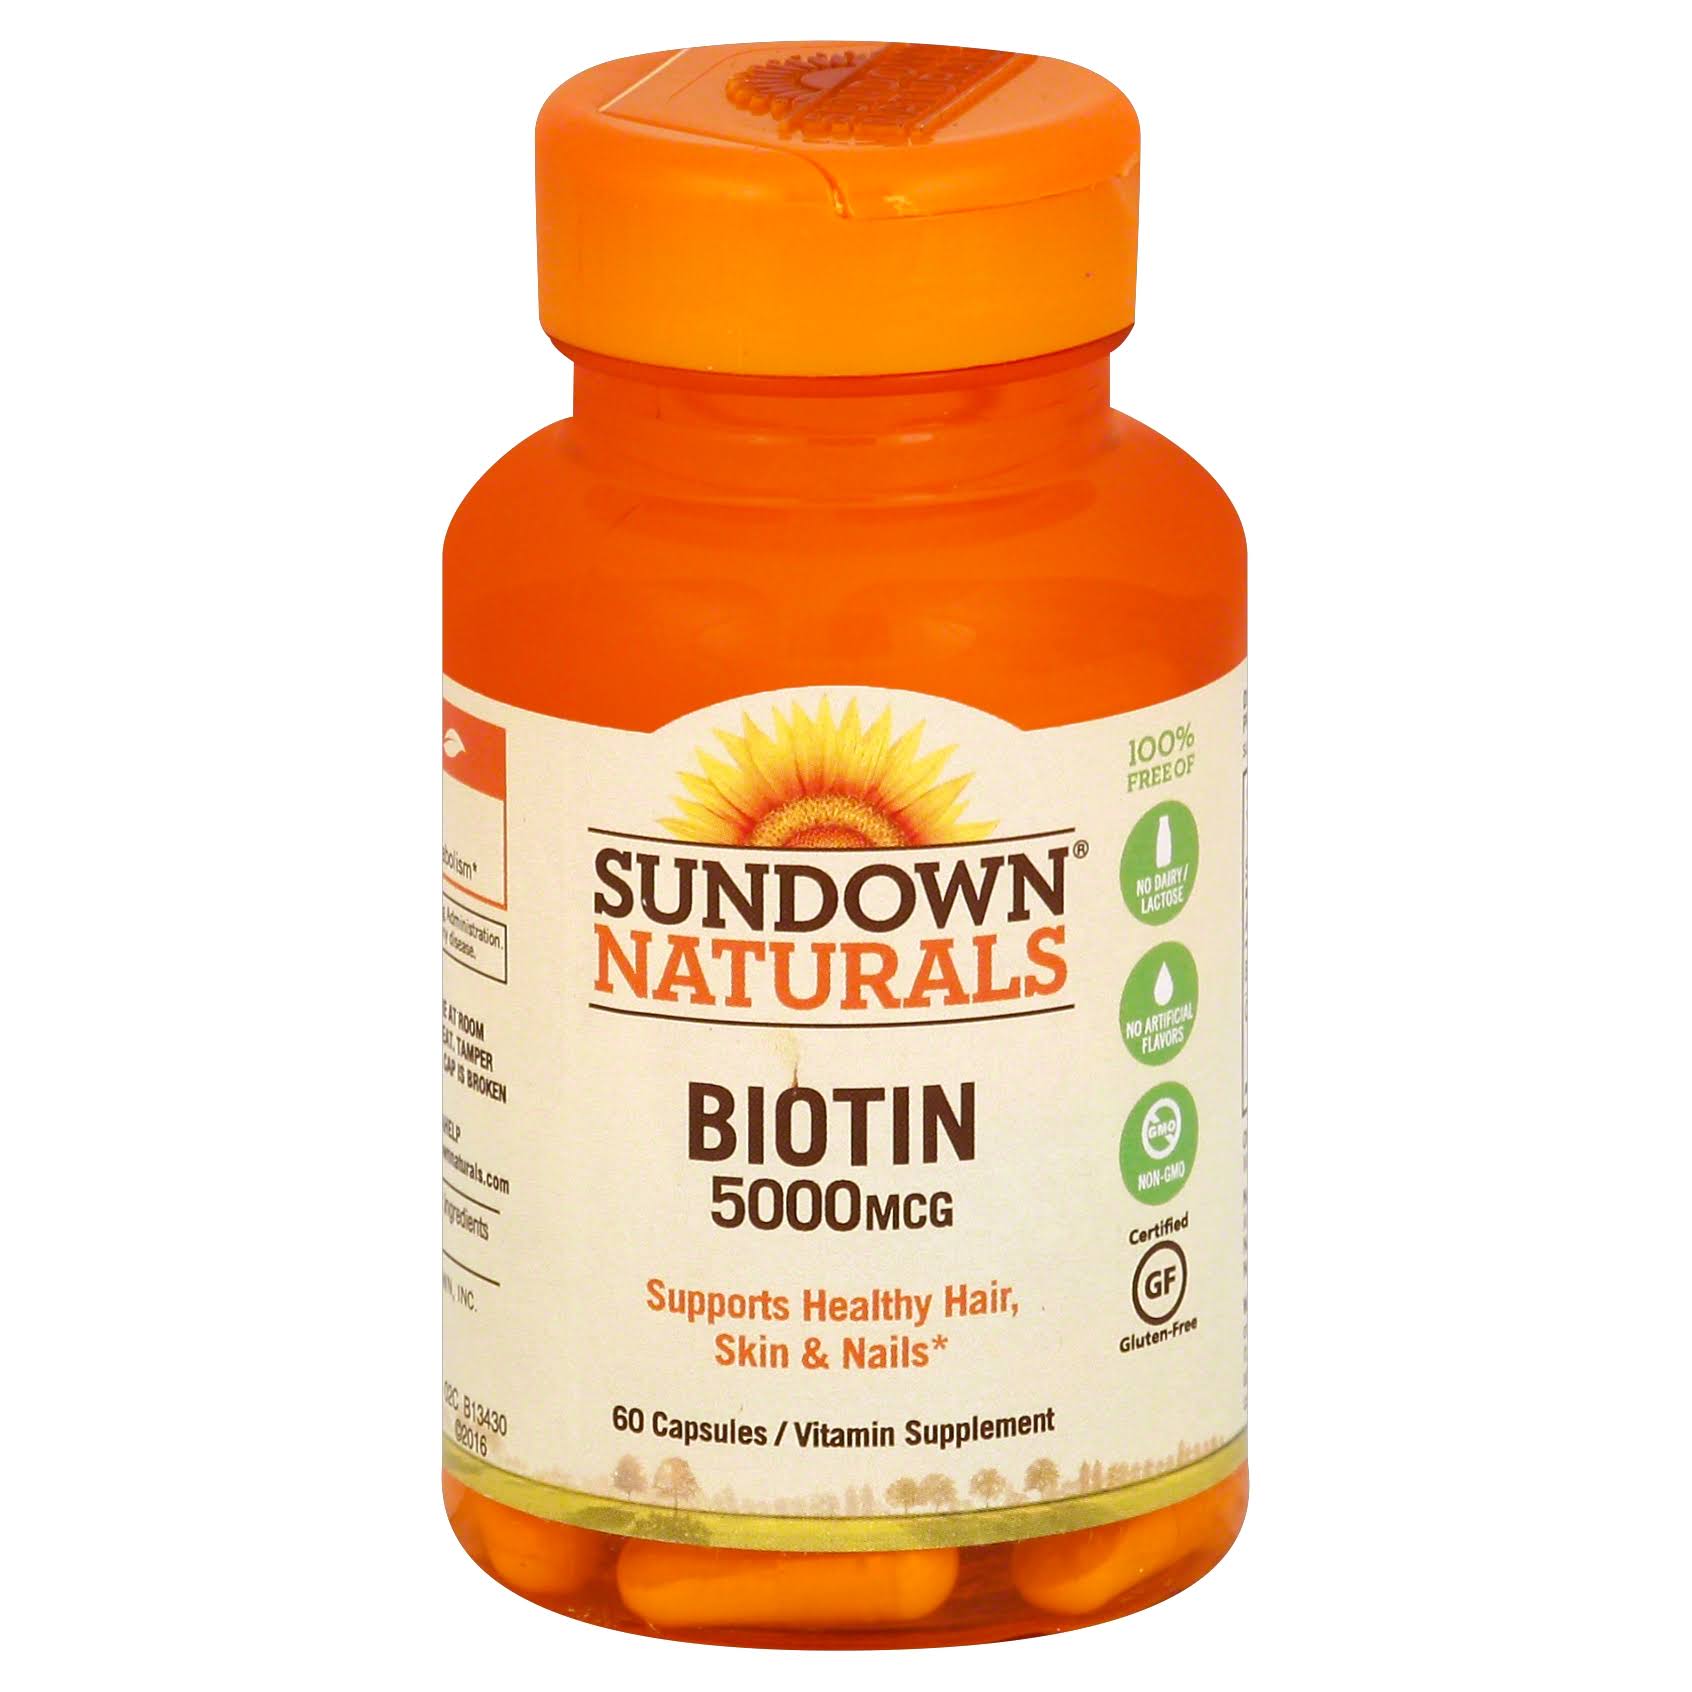 Sundown Naturals Biotin High Potency Biotin Supplement - 5000 mcg, 60 Capsules